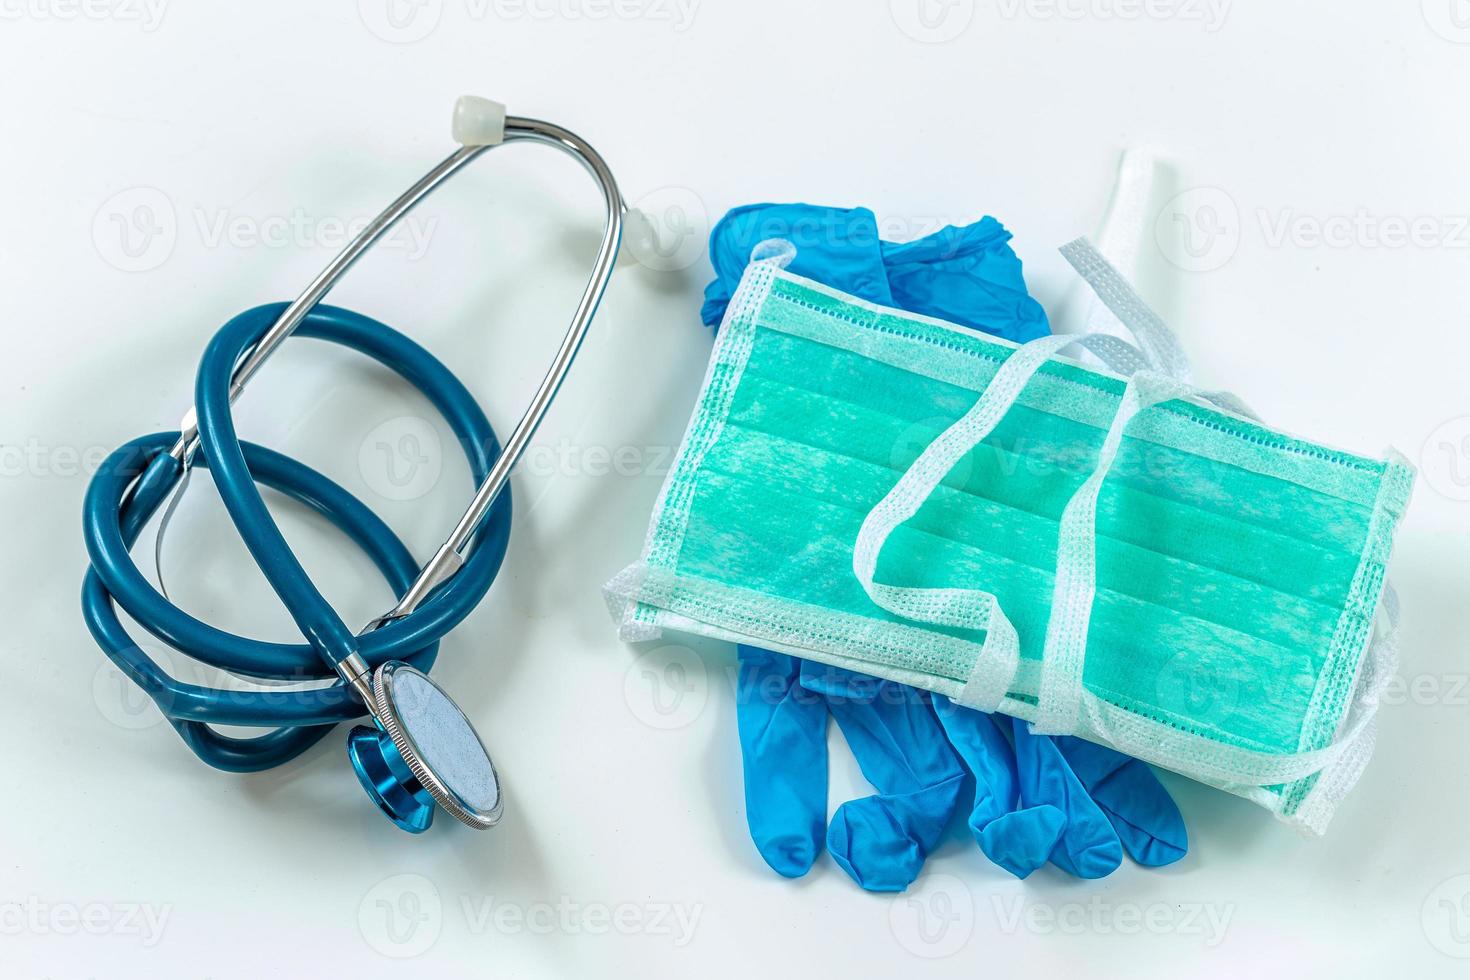 konzept der medizinischen schutzausrüstung während einer virusepidemie - chirurgische maske, brille, stethoskop und medizinische handschuhe. foto